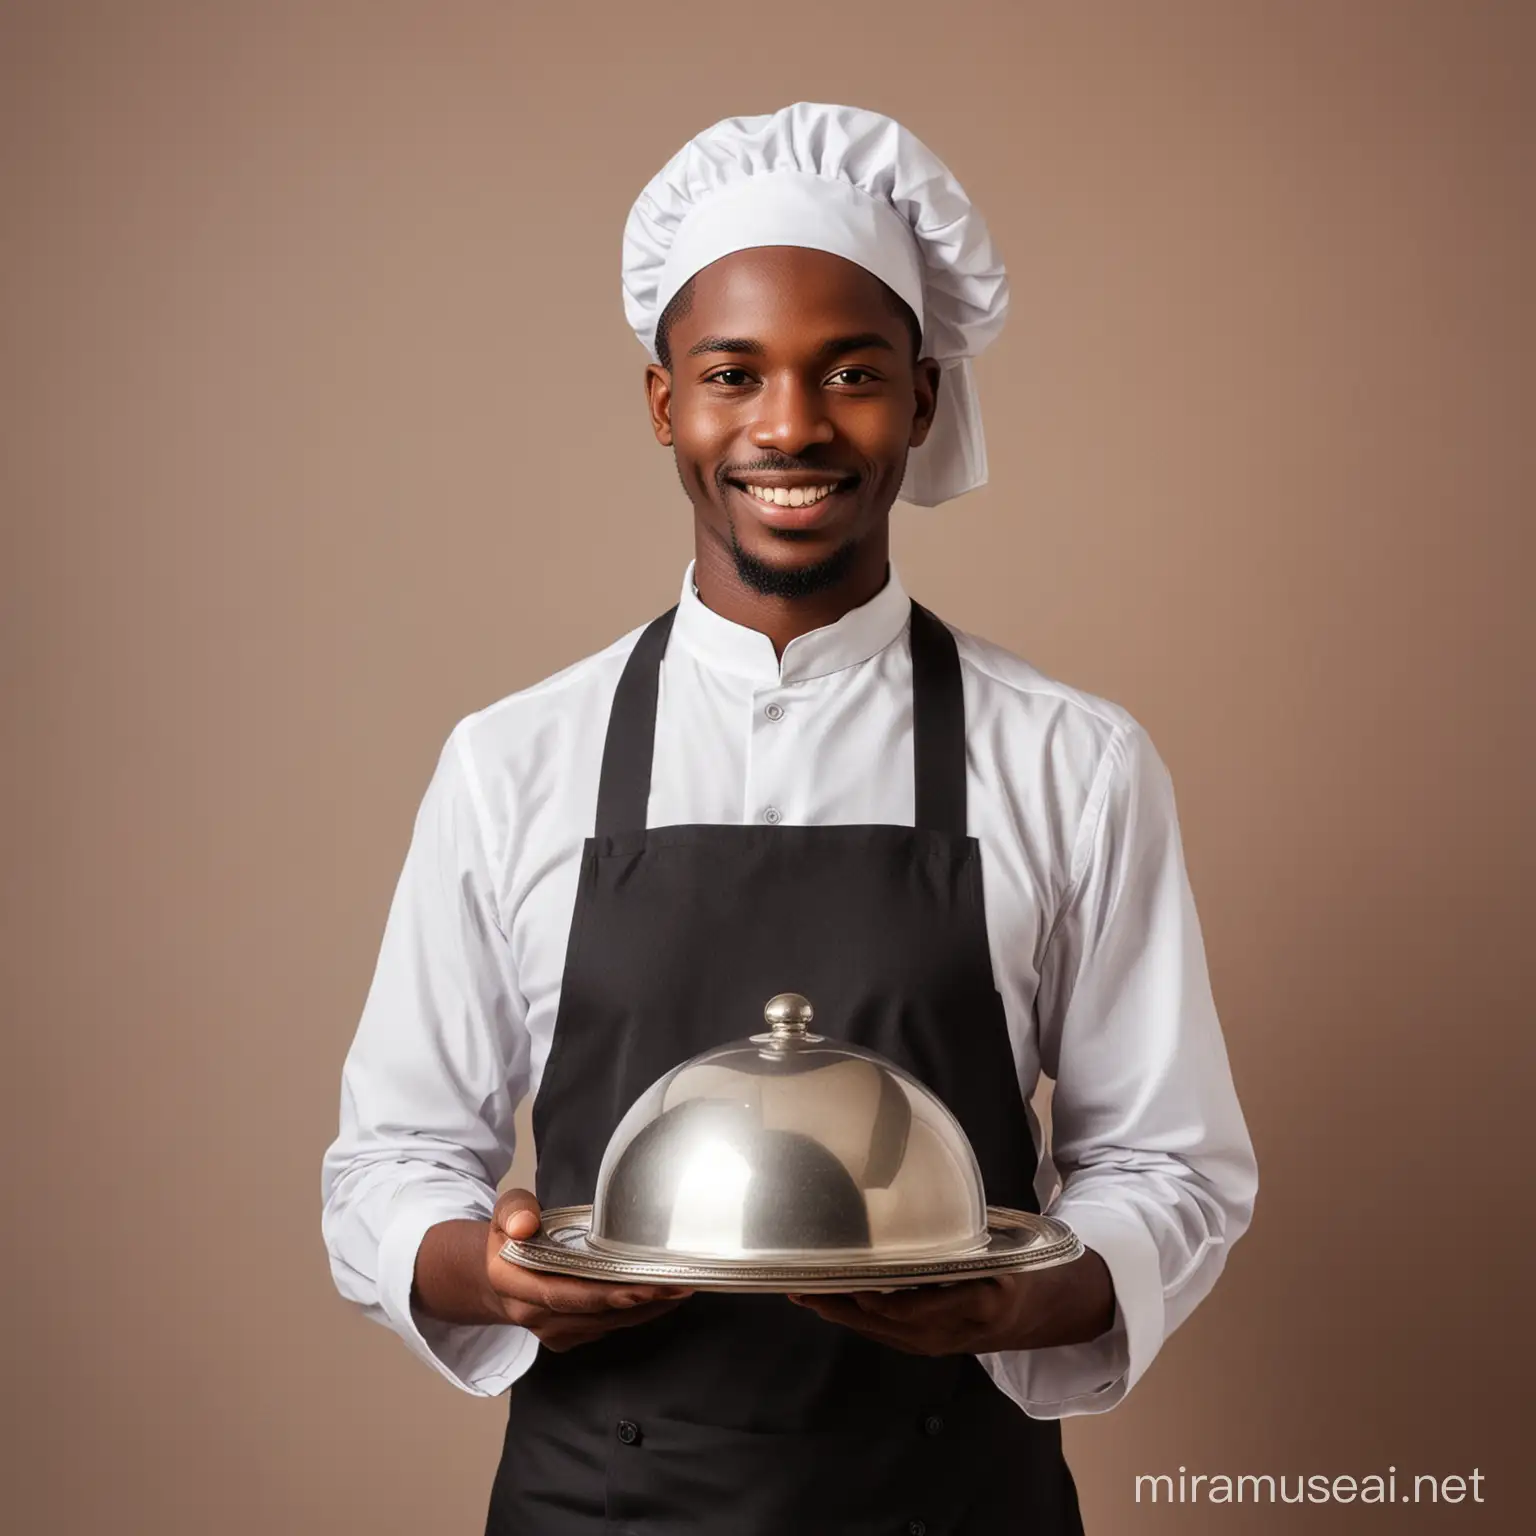 African waiter holding a clotche